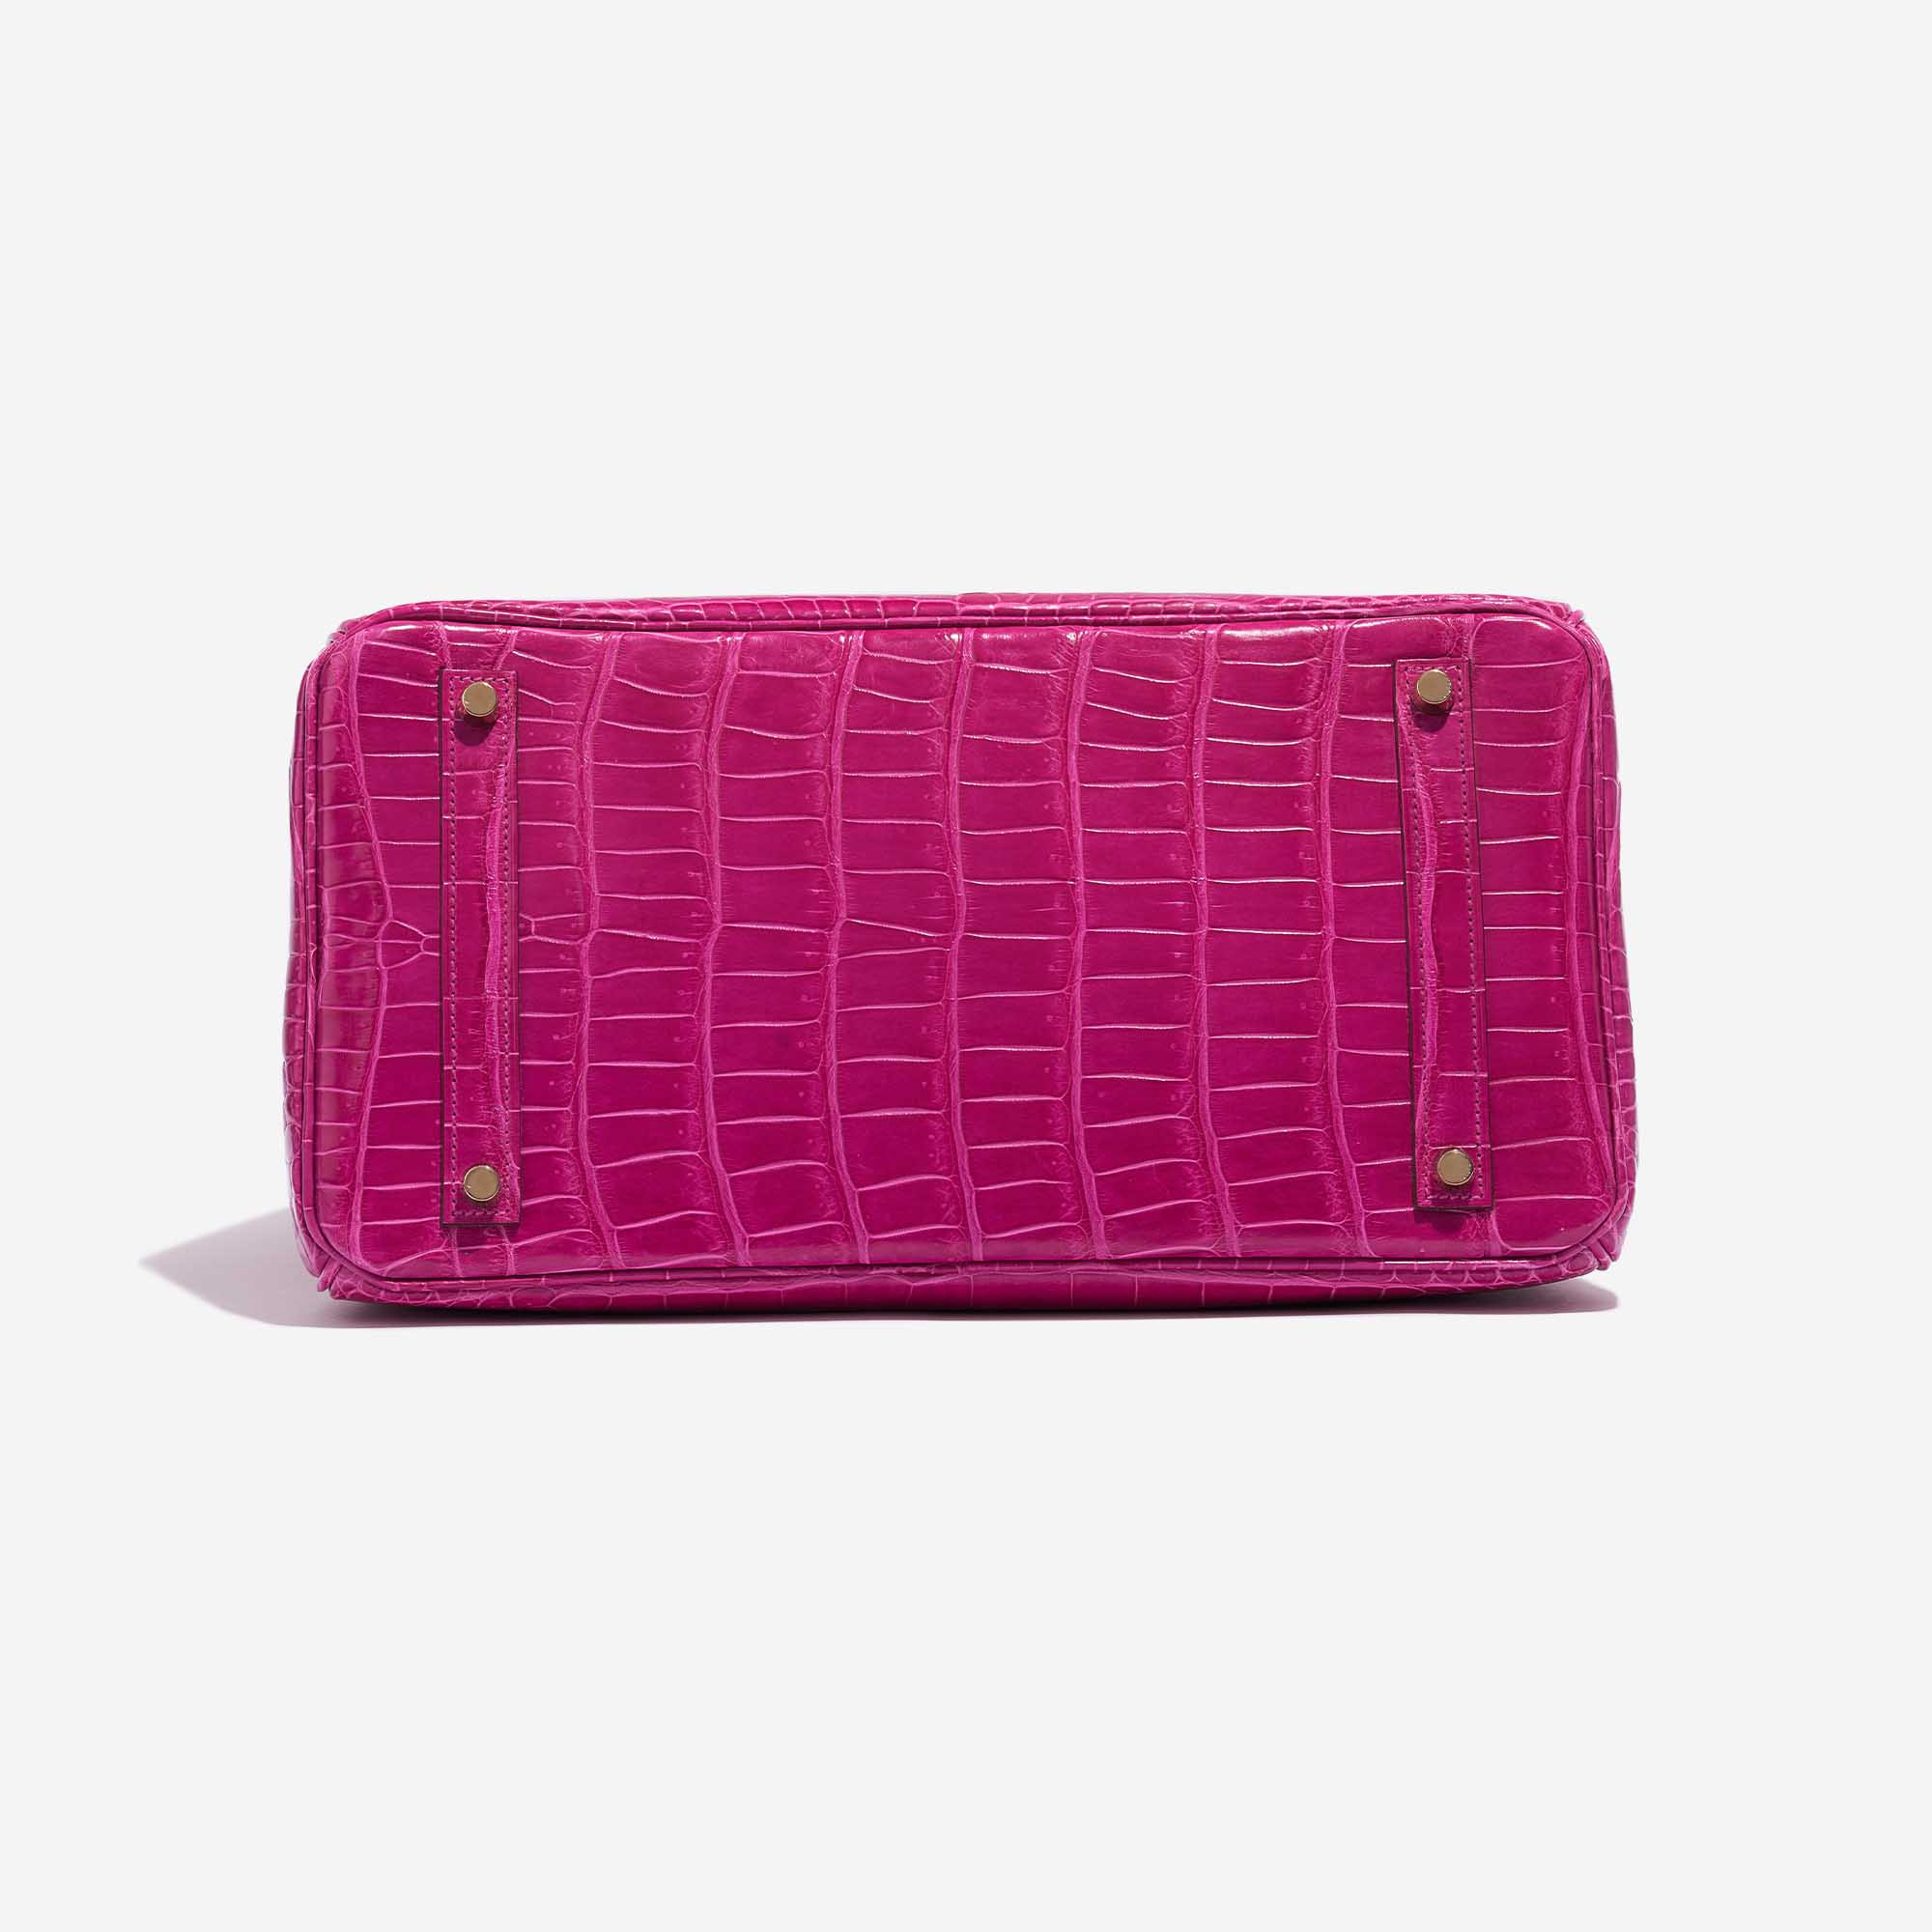 Pre-owned Hermès Tasche Birkin 35 Porosus Crocodile Rose Scheherazade Pink Bottom | Verkaufen Sie Ihre Designer-Tasche auf Saclab.com